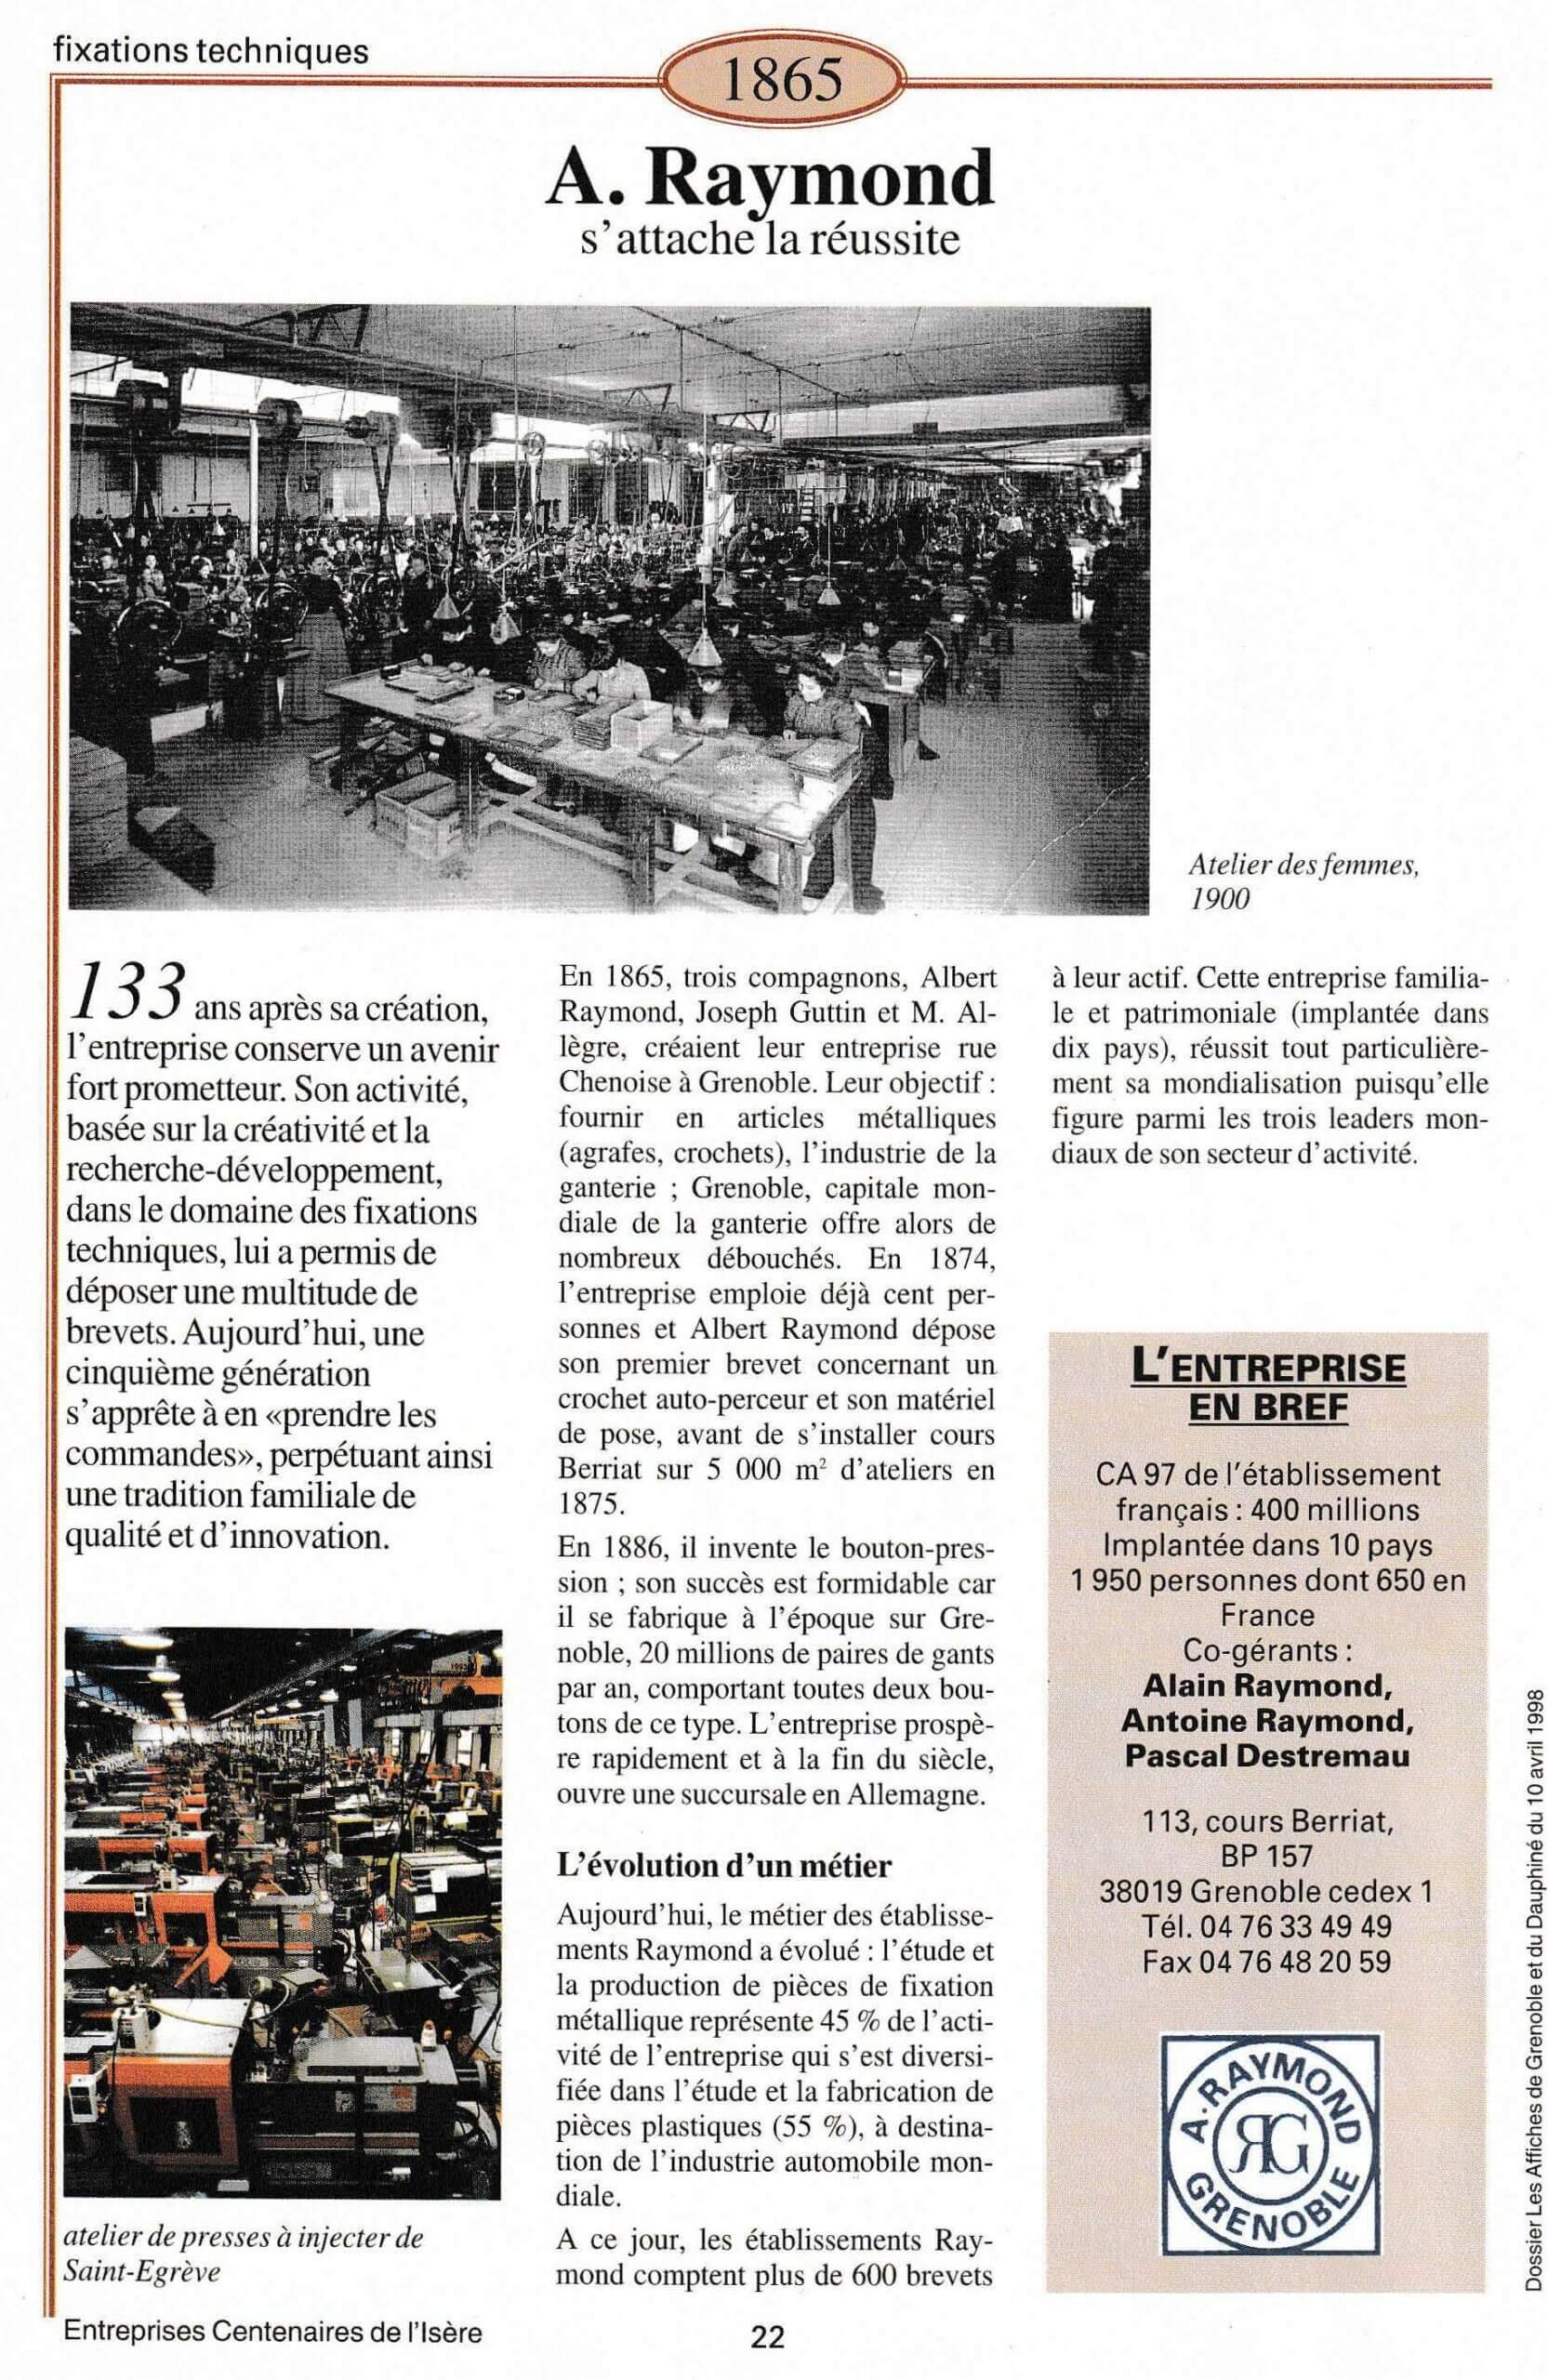 ARaymond - fiche du supplément "Entreprises centenaires en Isère", publié par Les affiches de Grenoble et du Dauphiné, juin 1998.